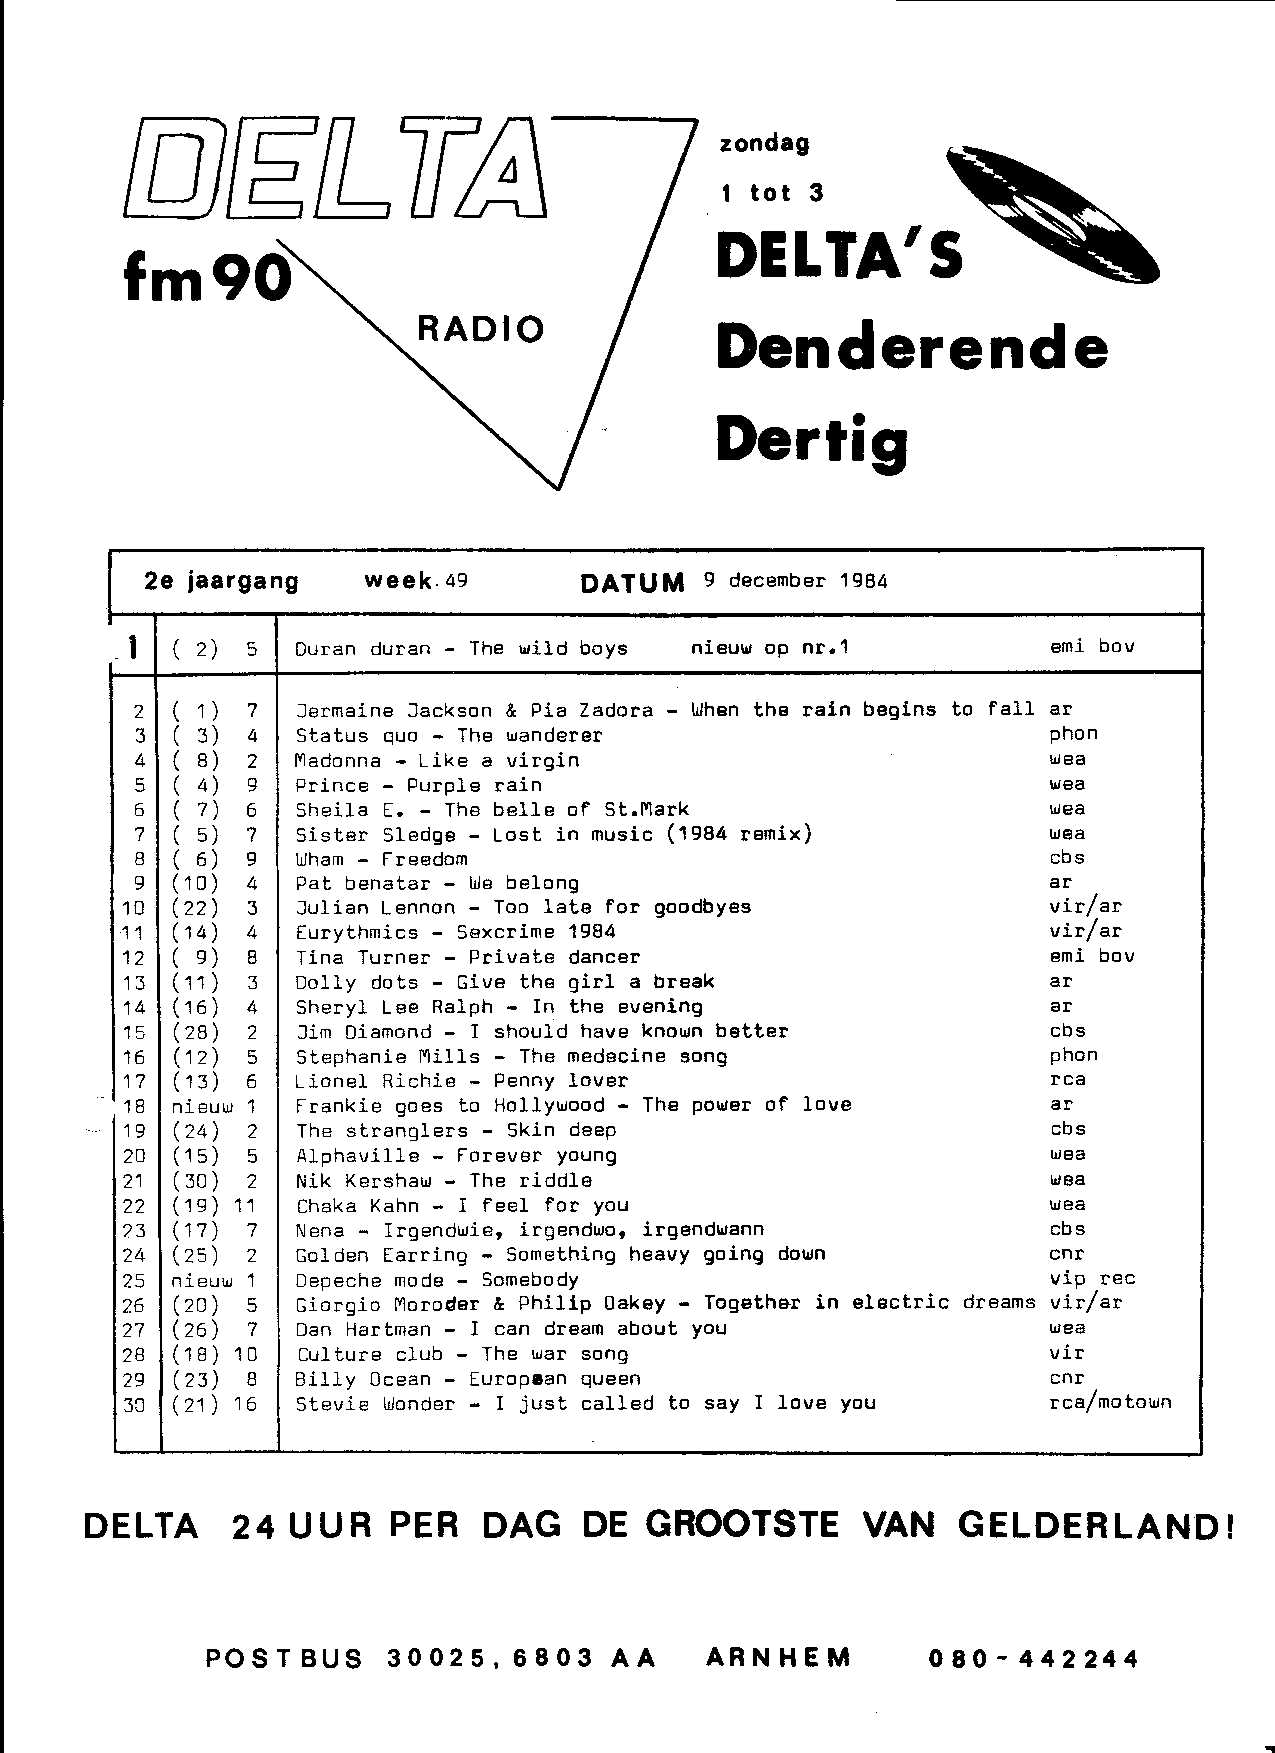 Delta's Denderende 30 09-12-1984